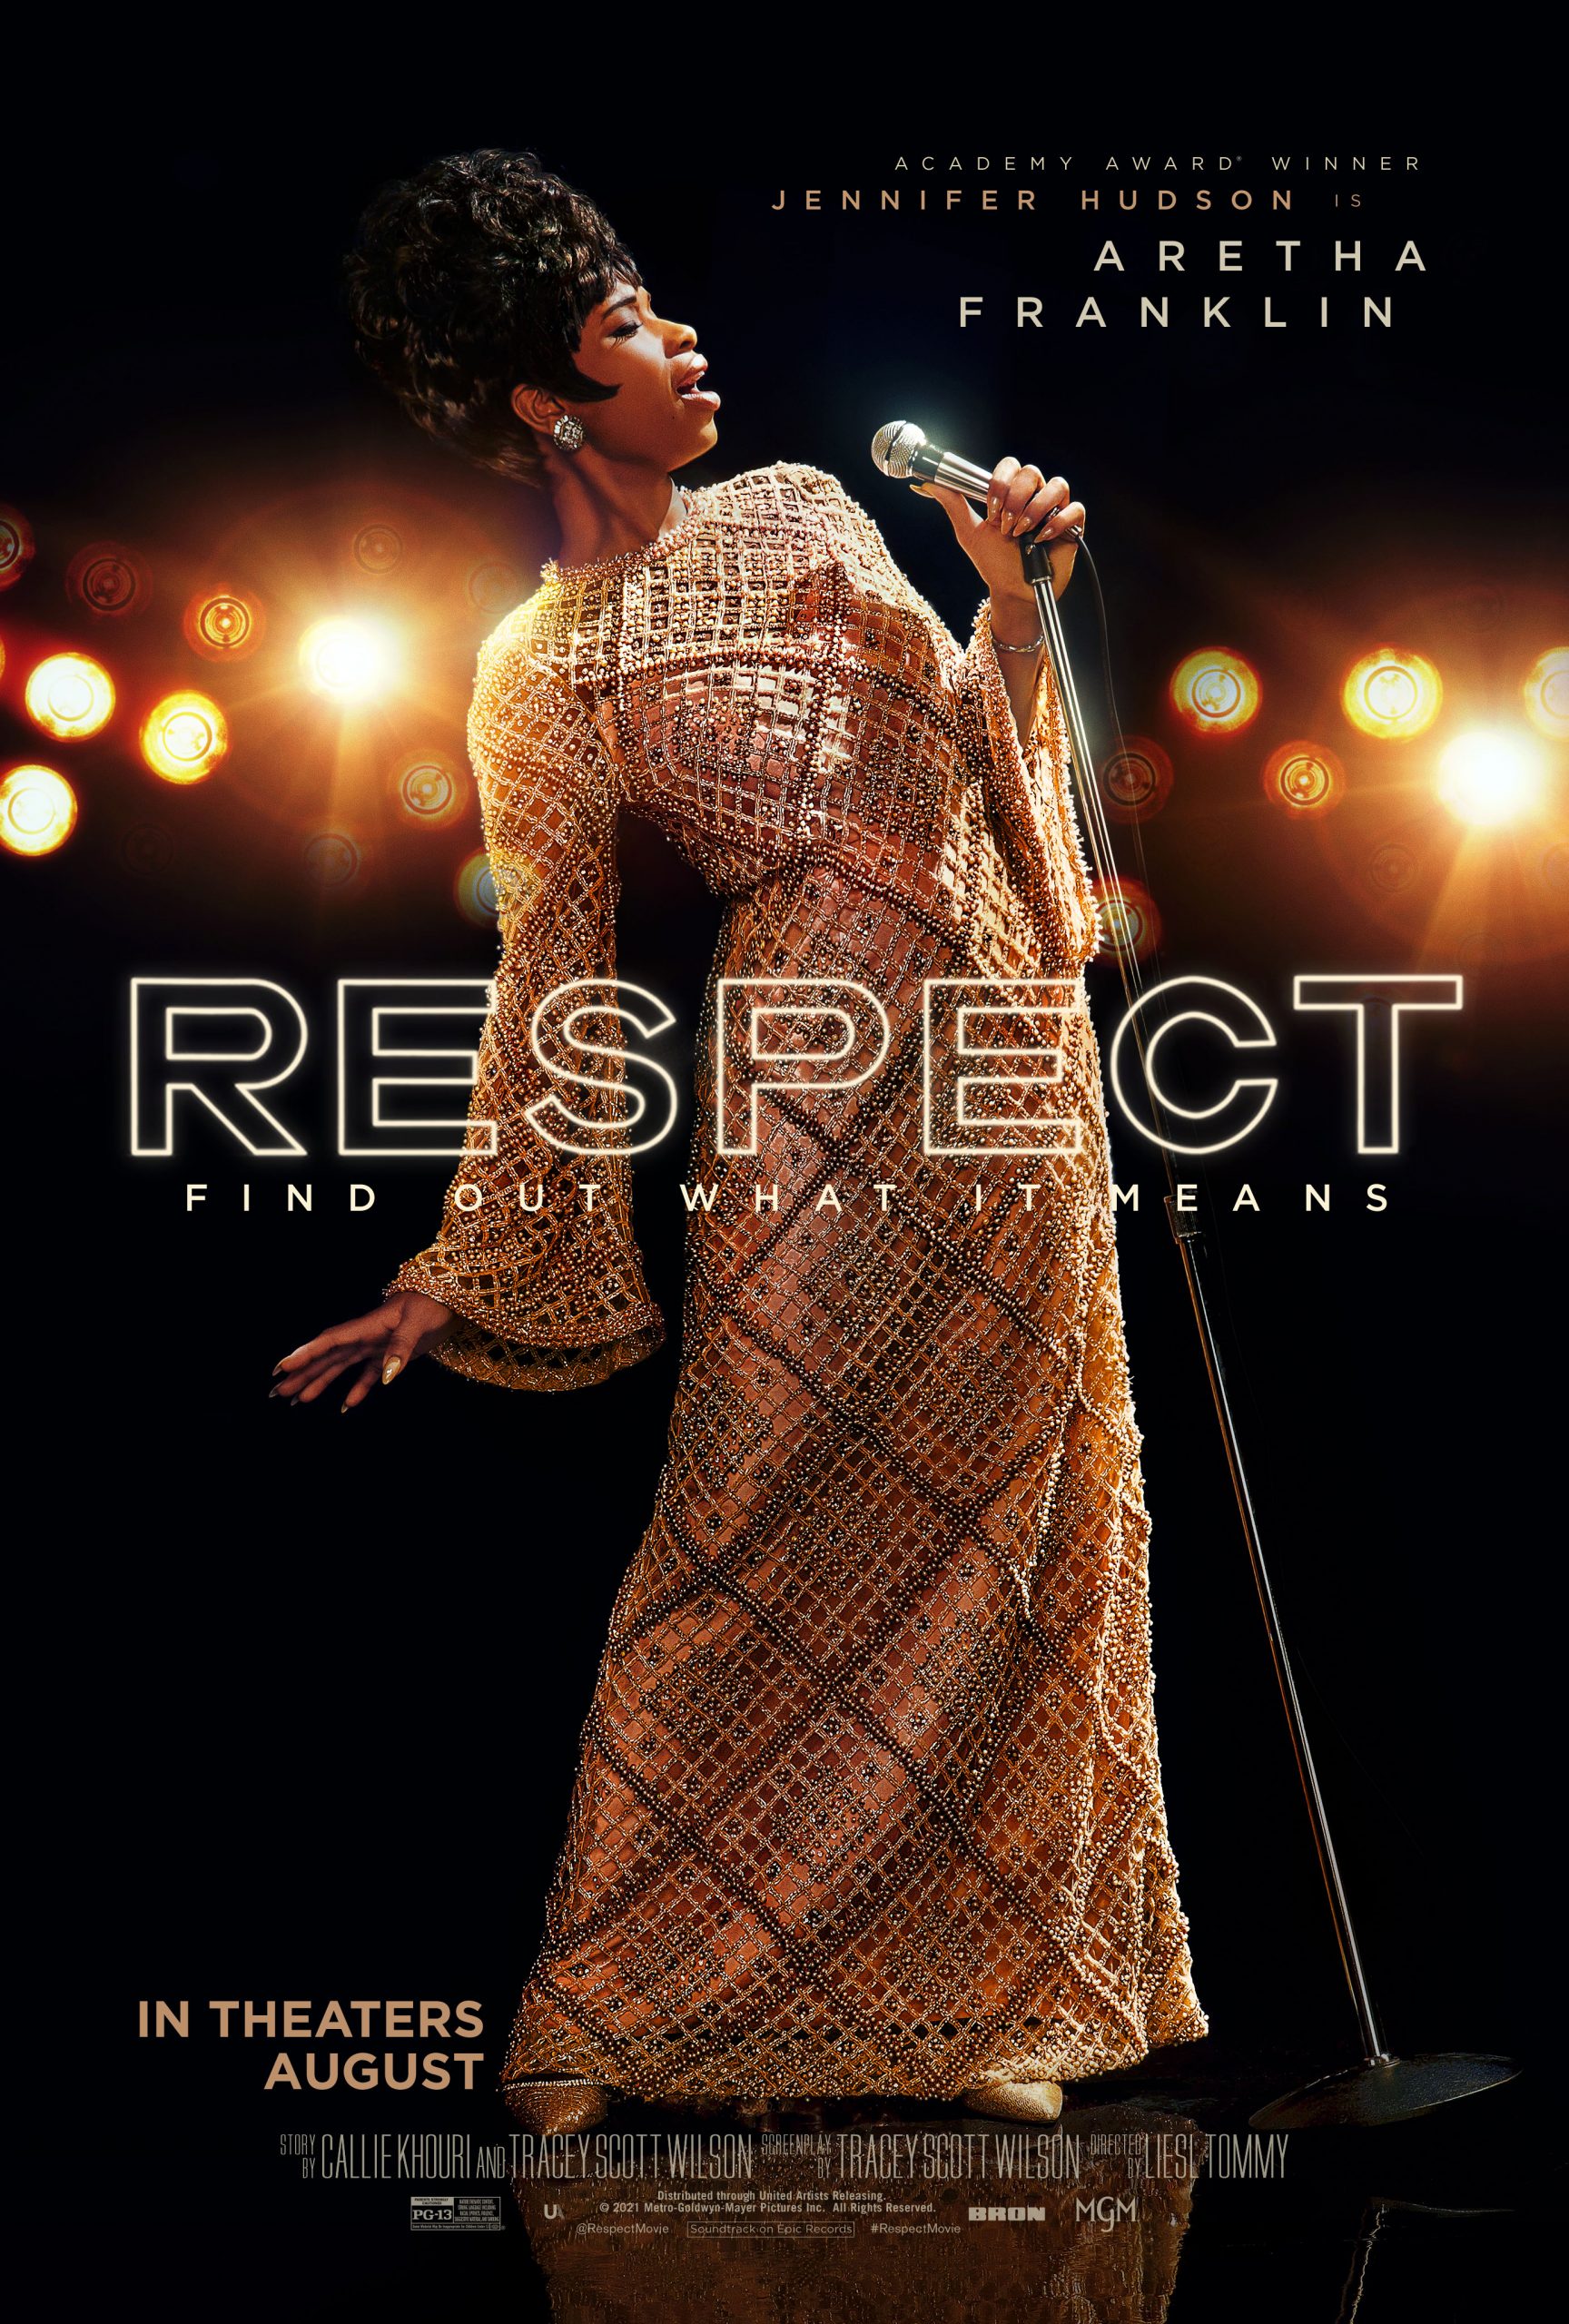 ‘Respect’ New Poster And New Film Stills, Starring Jennifer Hudson